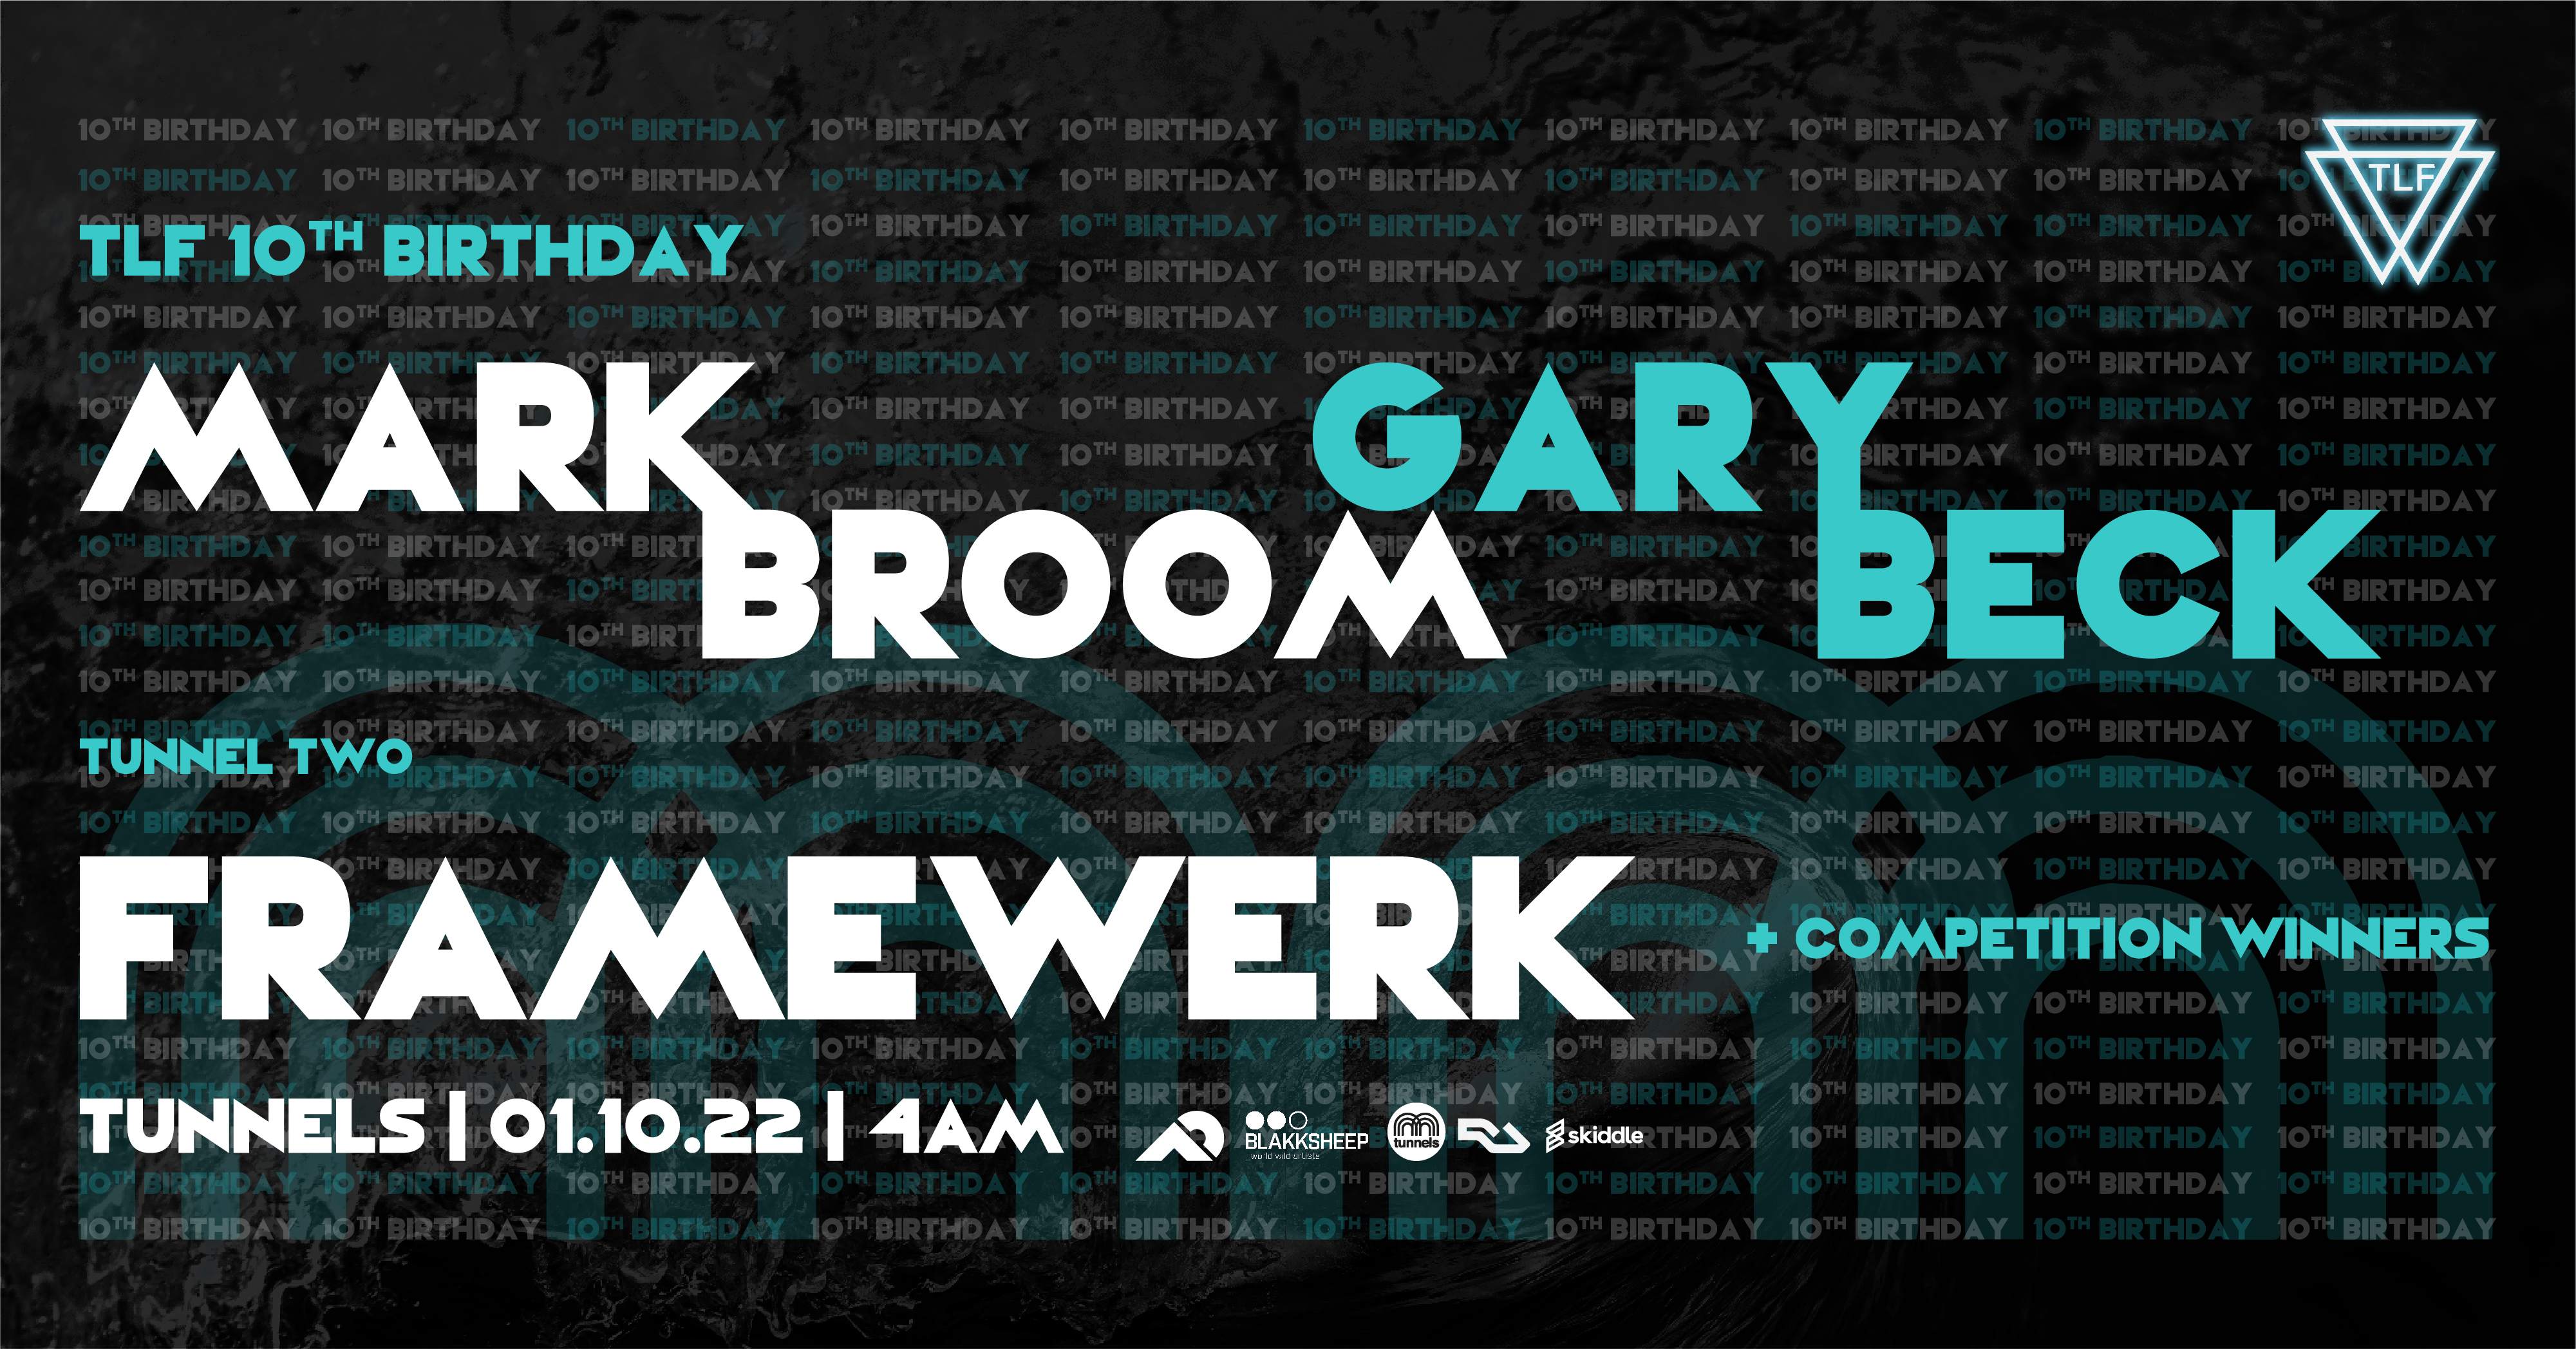 TLF 10th Birthday: Mark Broom // Gary Beck // Framewerk // 4am License - Página trasera